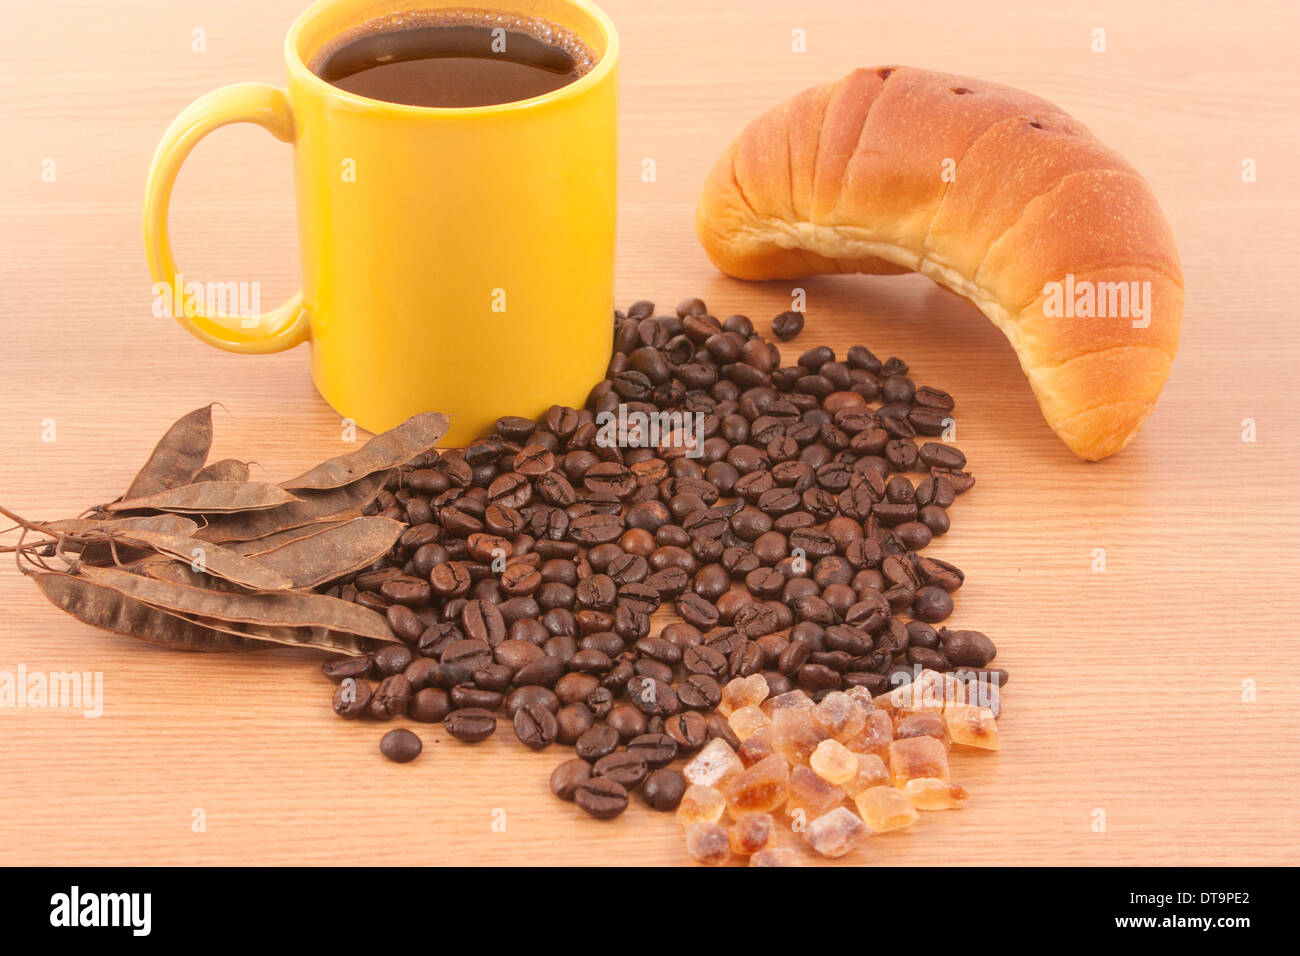 Tasse de café, le sucre brun, les grains de café et un croissant sur fond de bois Banque D'Images